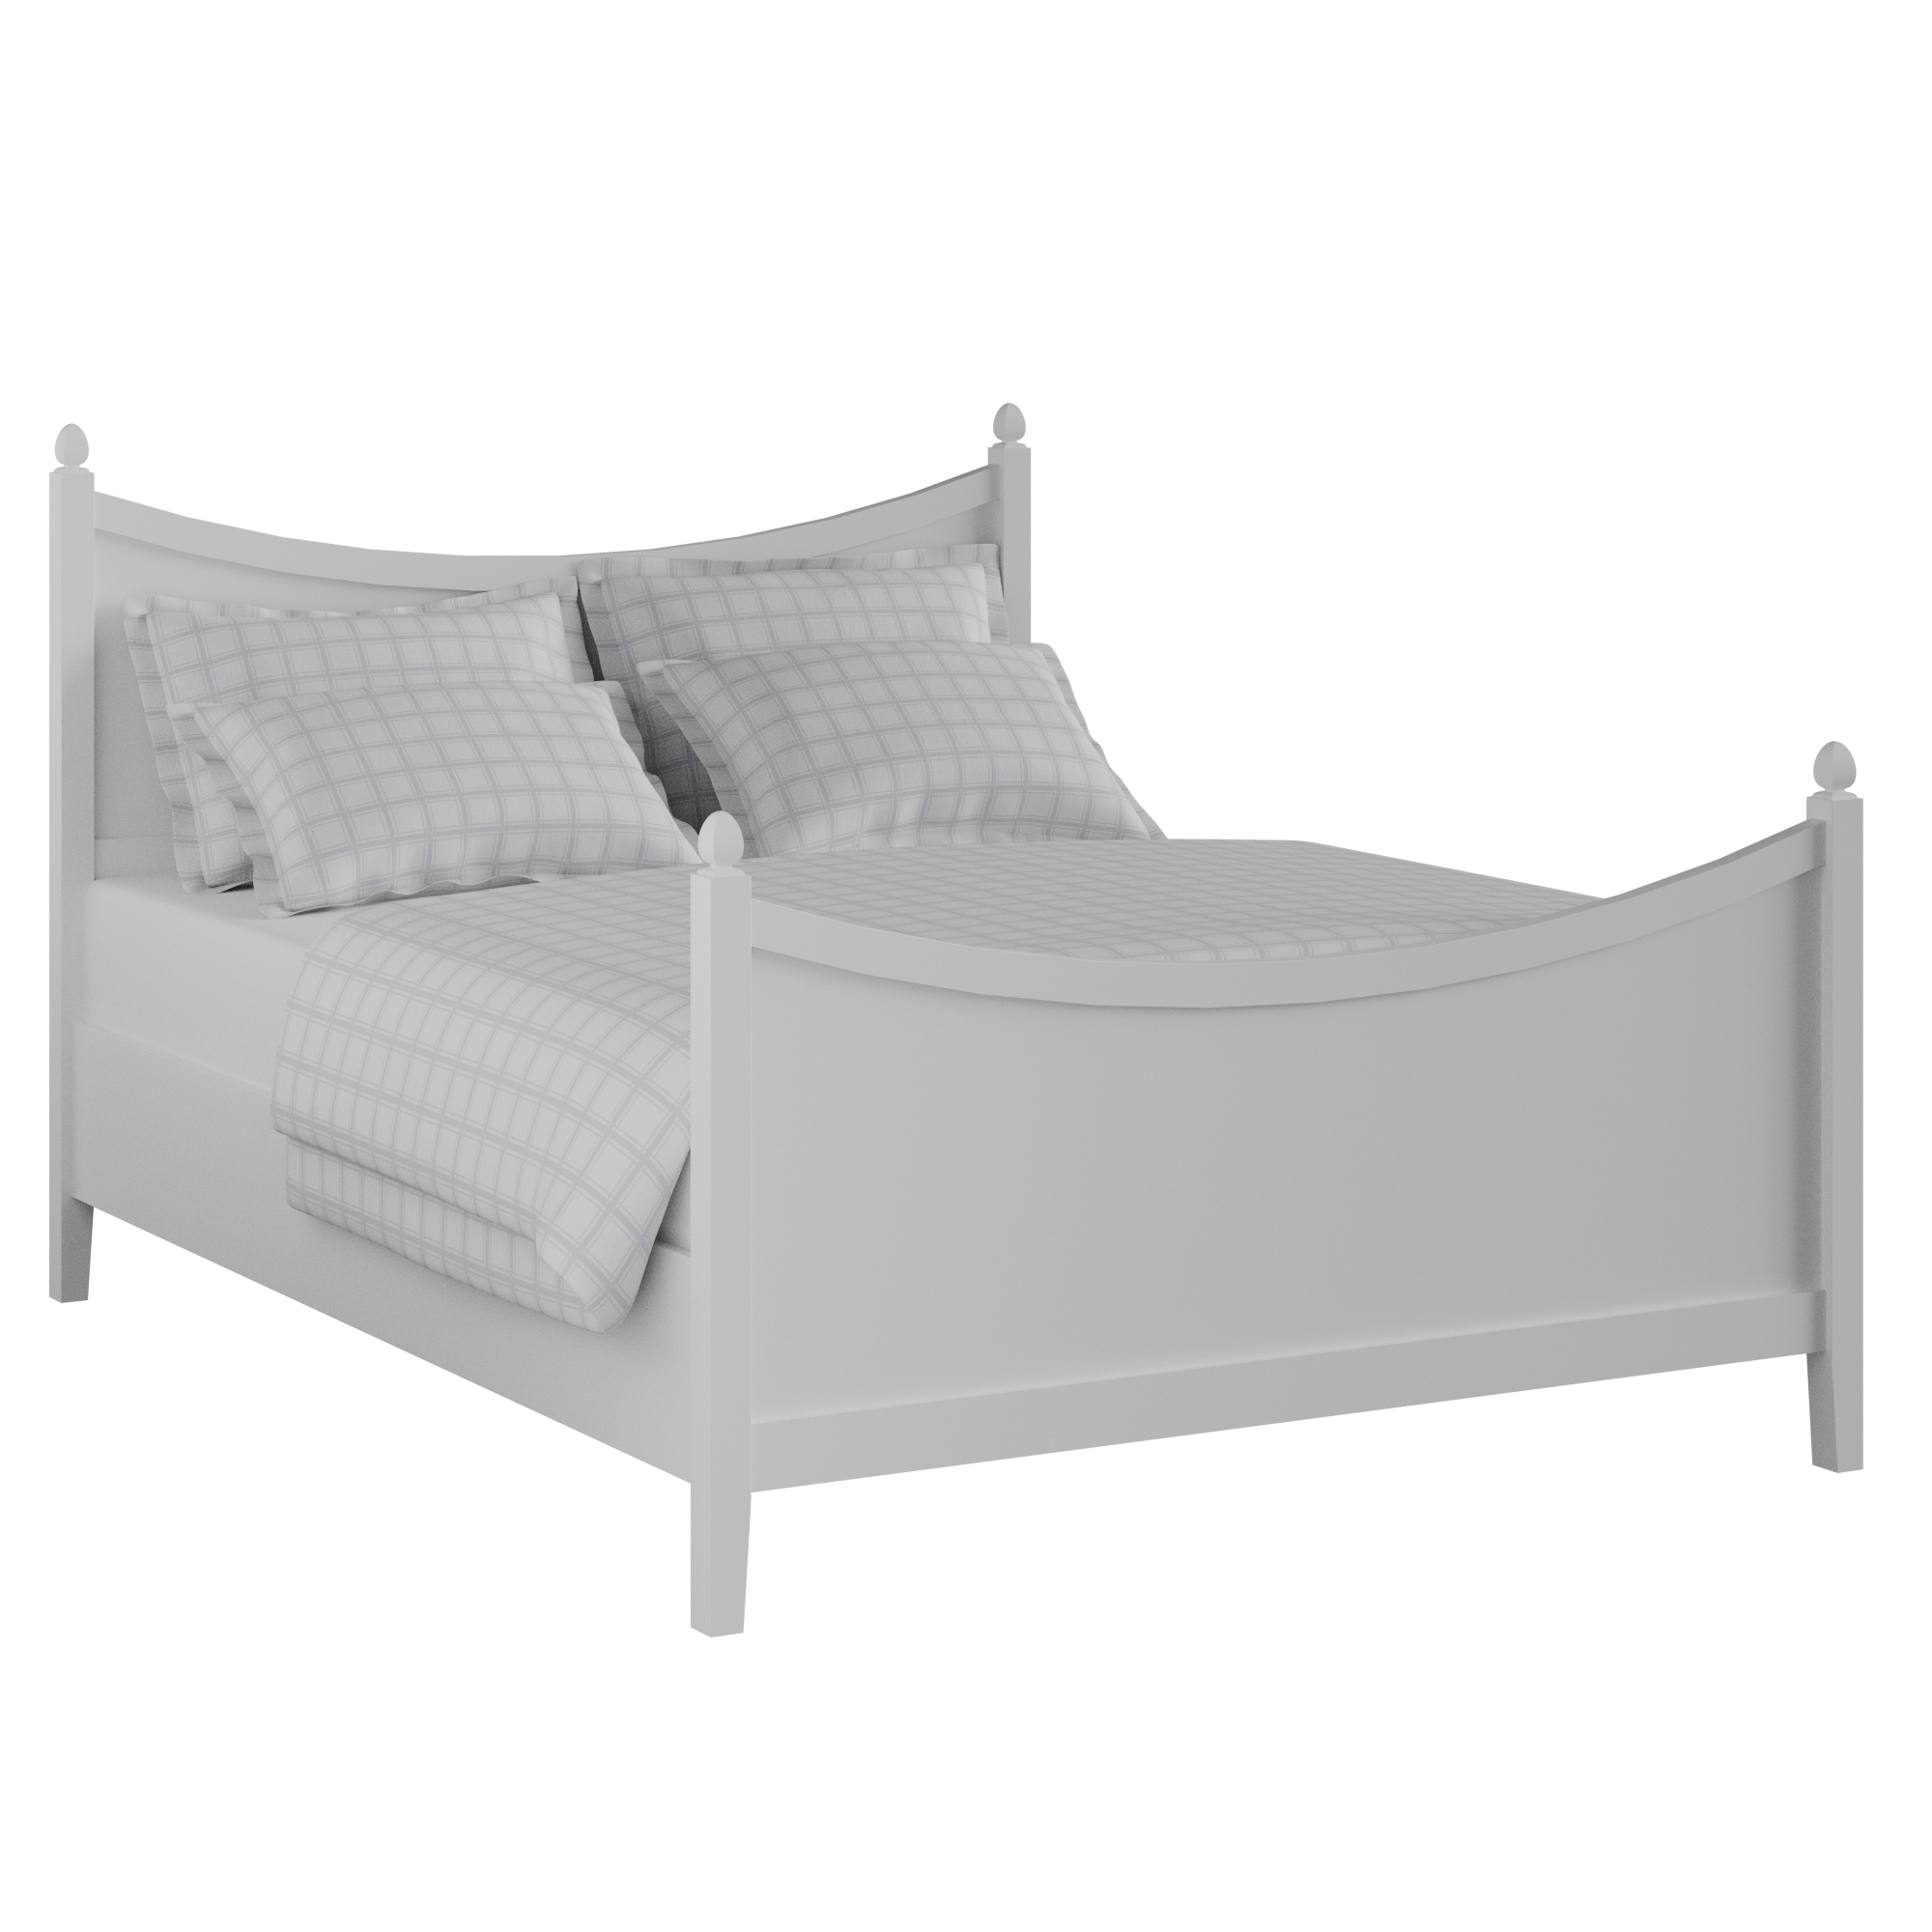 Blake Painted letto in legno bianco con materasso